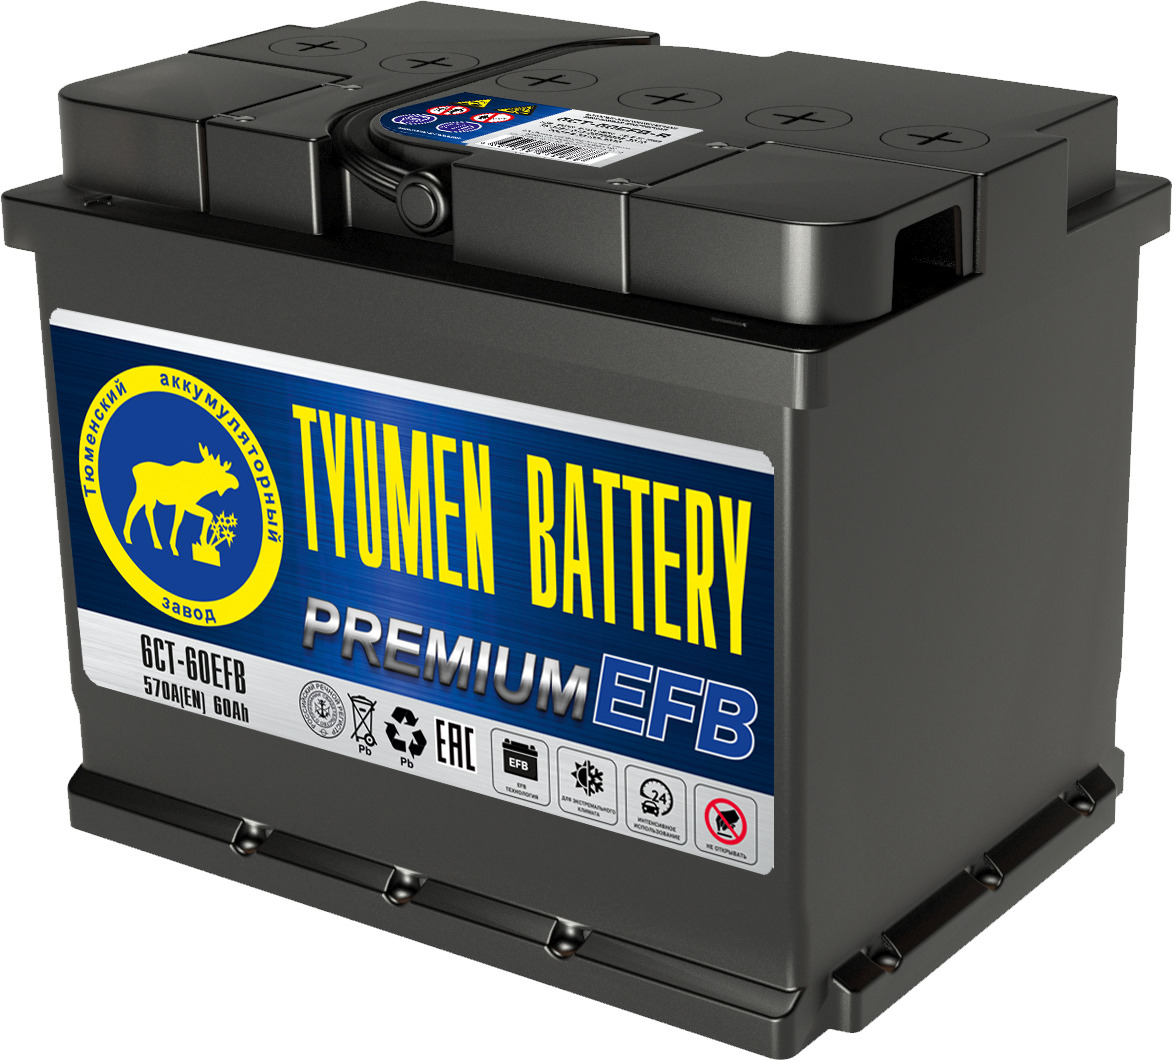 Efb аккумуляторы купить. Аккумулятор Tyumen Battery Premium. Аккумулятор Tyumen 60. Аккумулятор Tyumen Battery Premium 60ah. Аккумулятор Tyumen Battery 60ah.